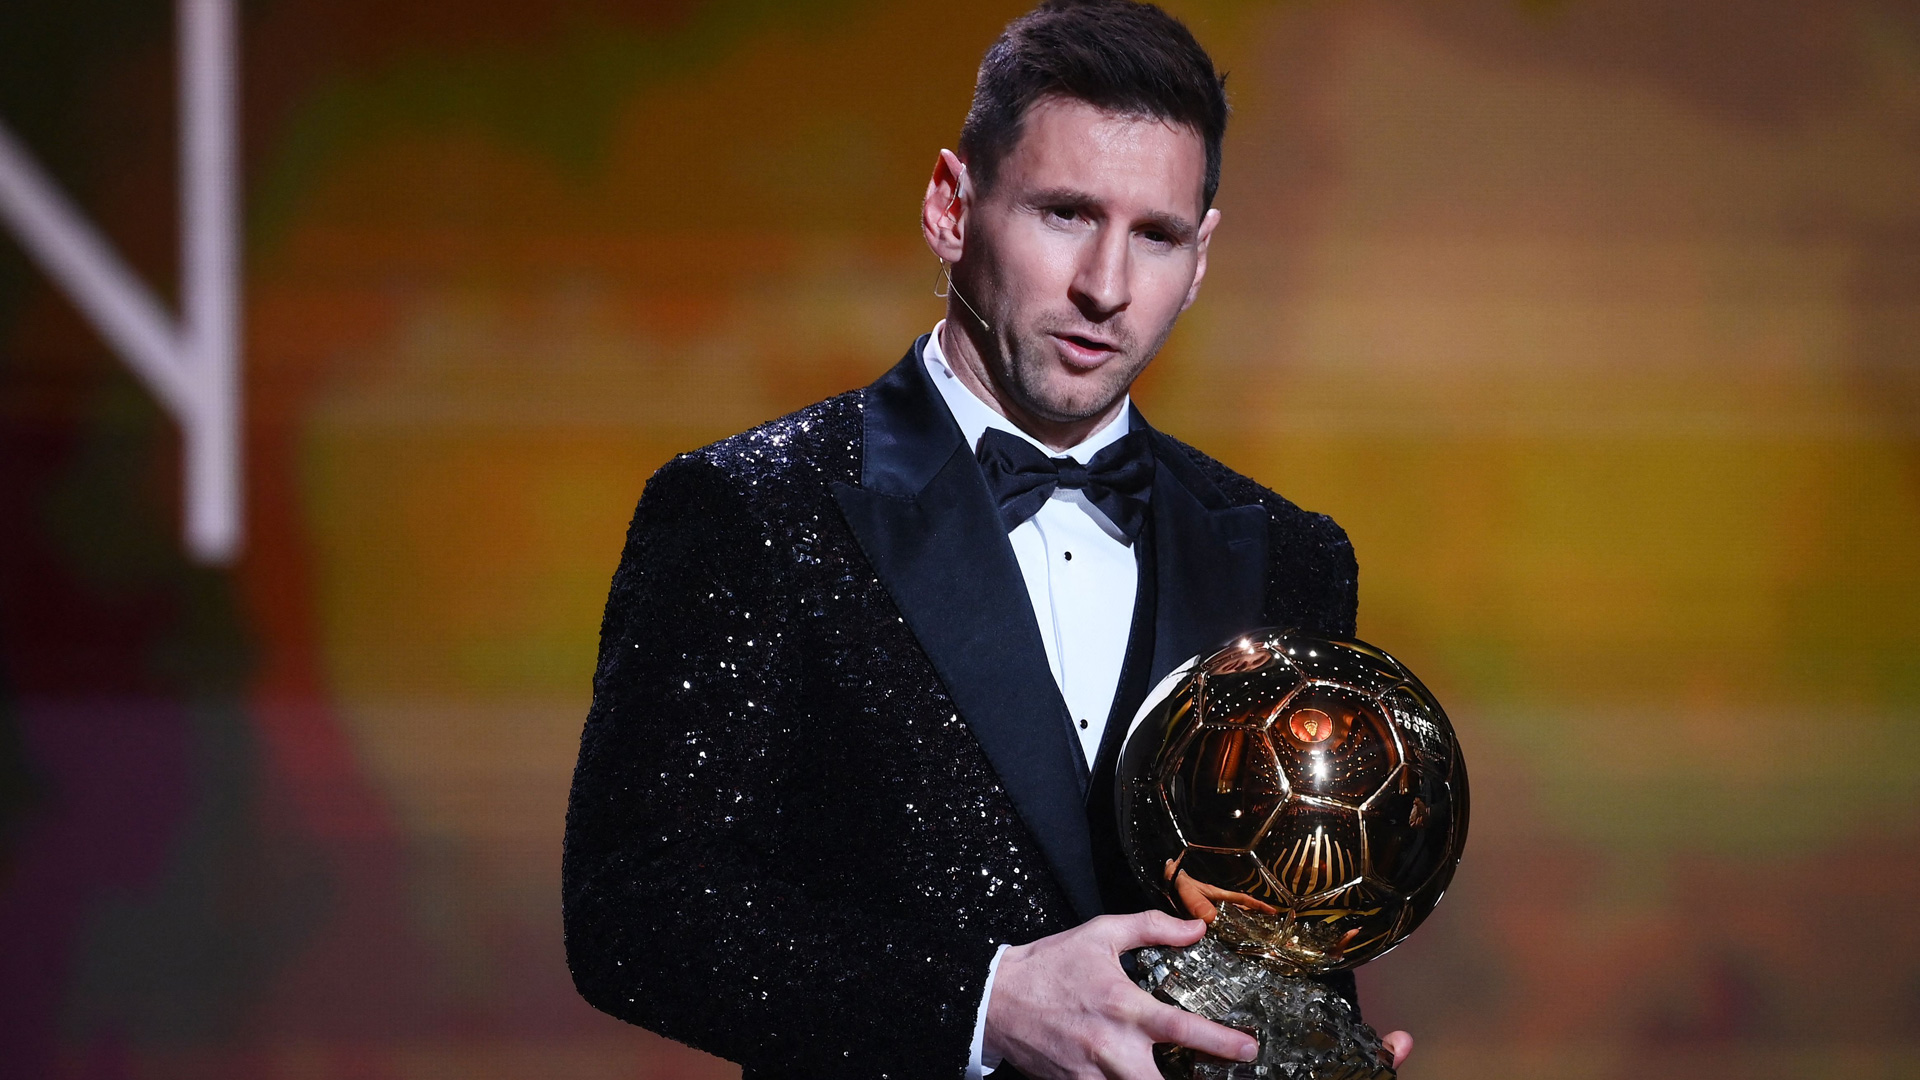 Ballon d’Or : « Scandale », « Honte », la presse allemande sous tension après le sacre de Messi